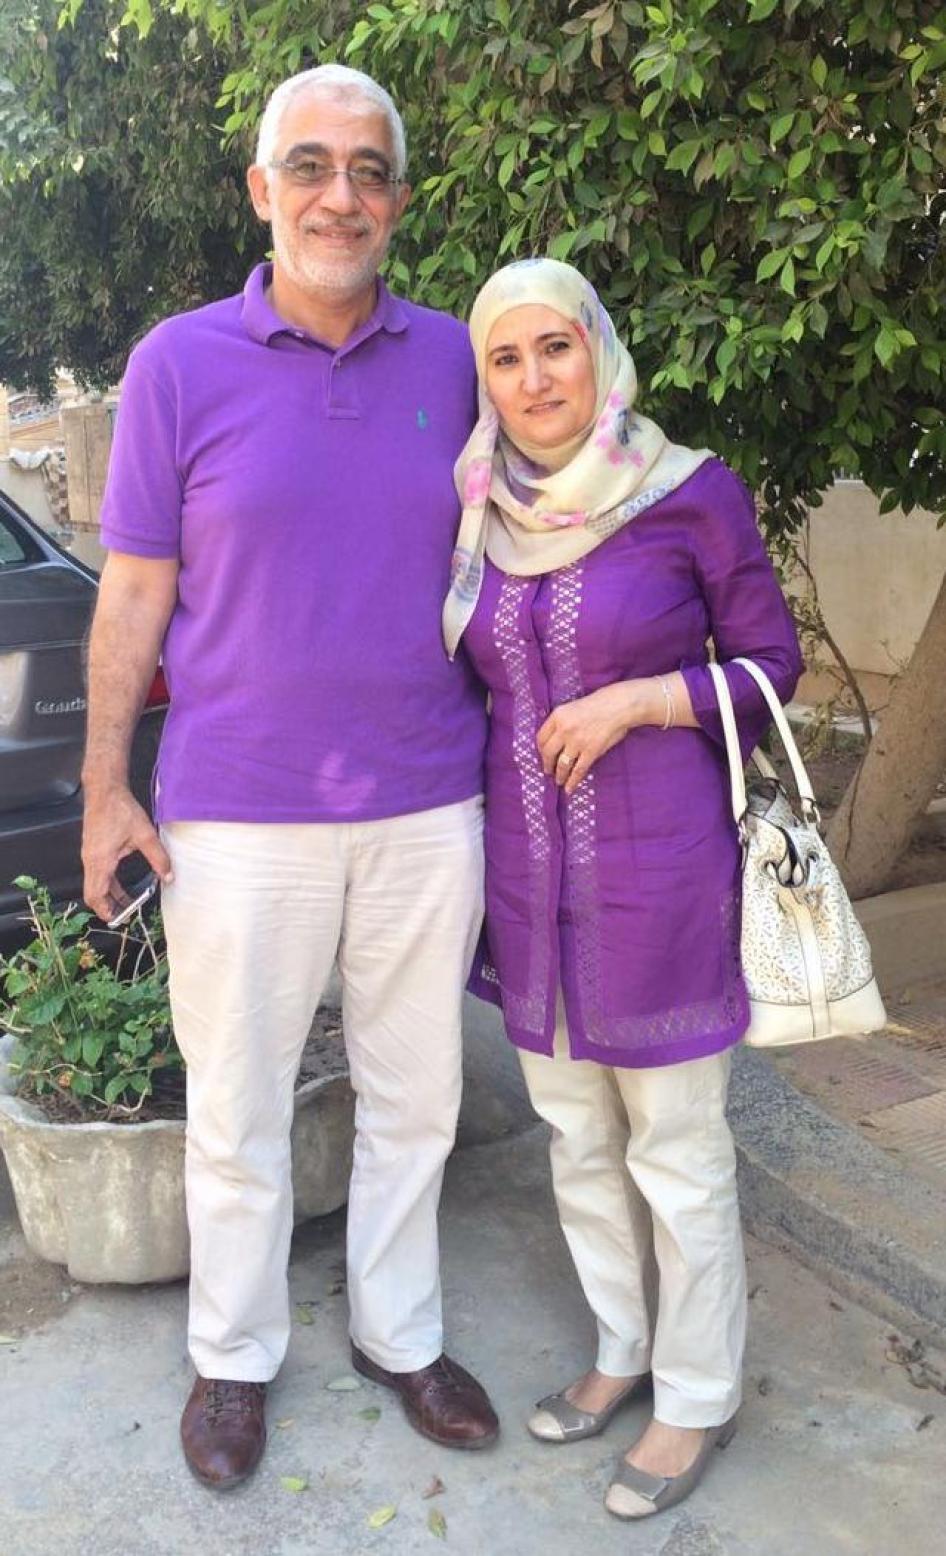 أوقفت قوات الأمن التابعة لوزارة الداخلية علا القرضاوي (55 عاما) وزوجها حسام خلف (58 عاما) من دون مذكرة توقيف على خلفية مزاعم ارتباطهما بـ" الإخوان المسلمين".  